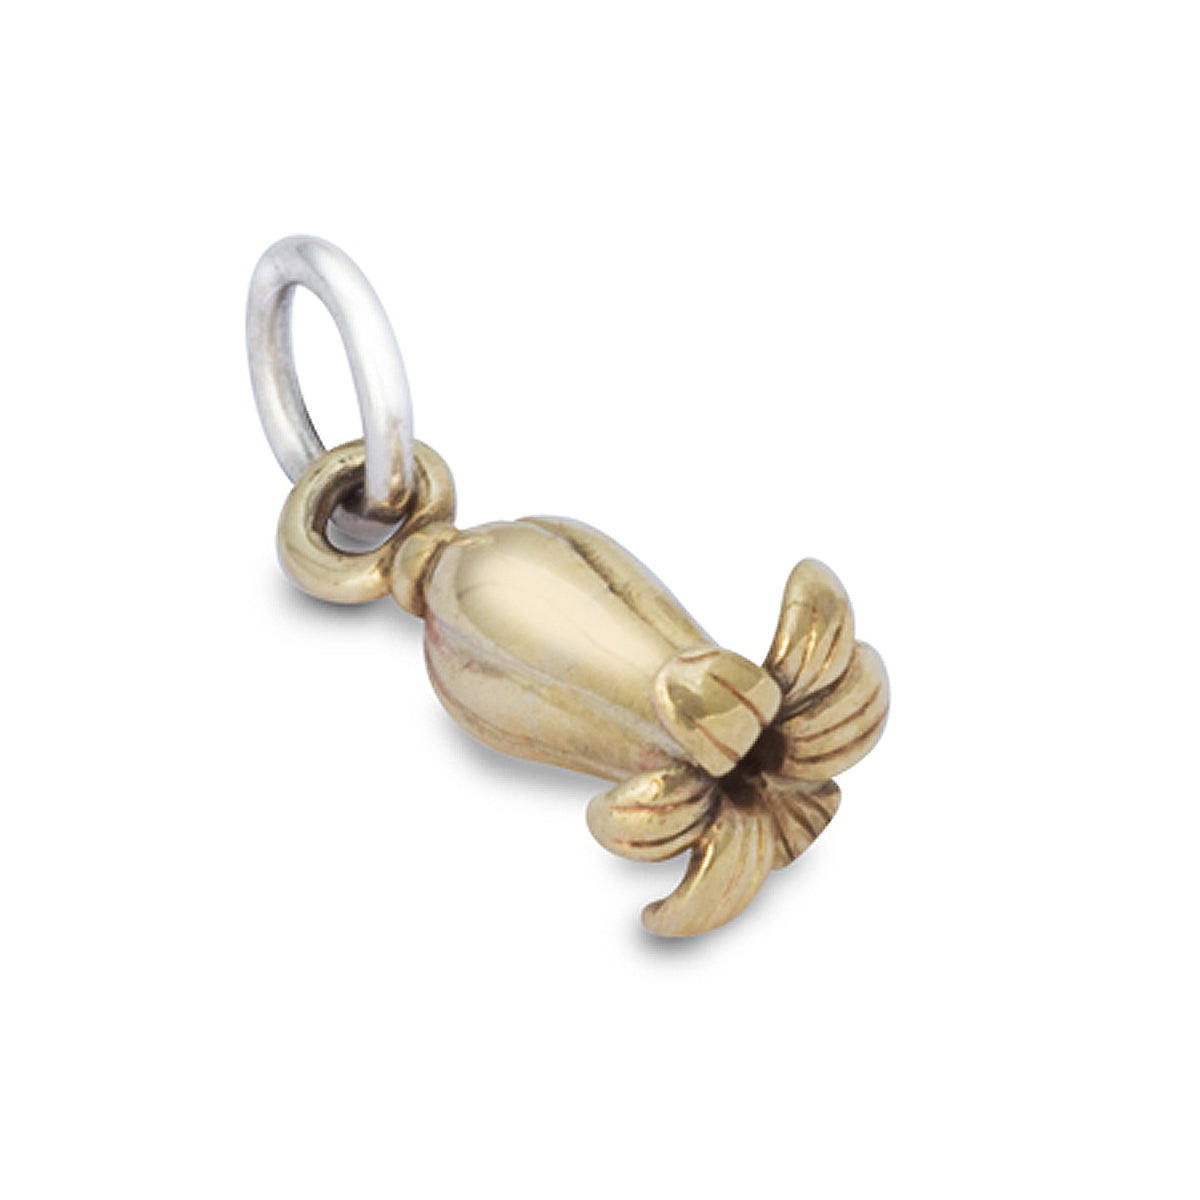 Solid gold bluebell flower bracelet pendant charm Scarlett Jewellery